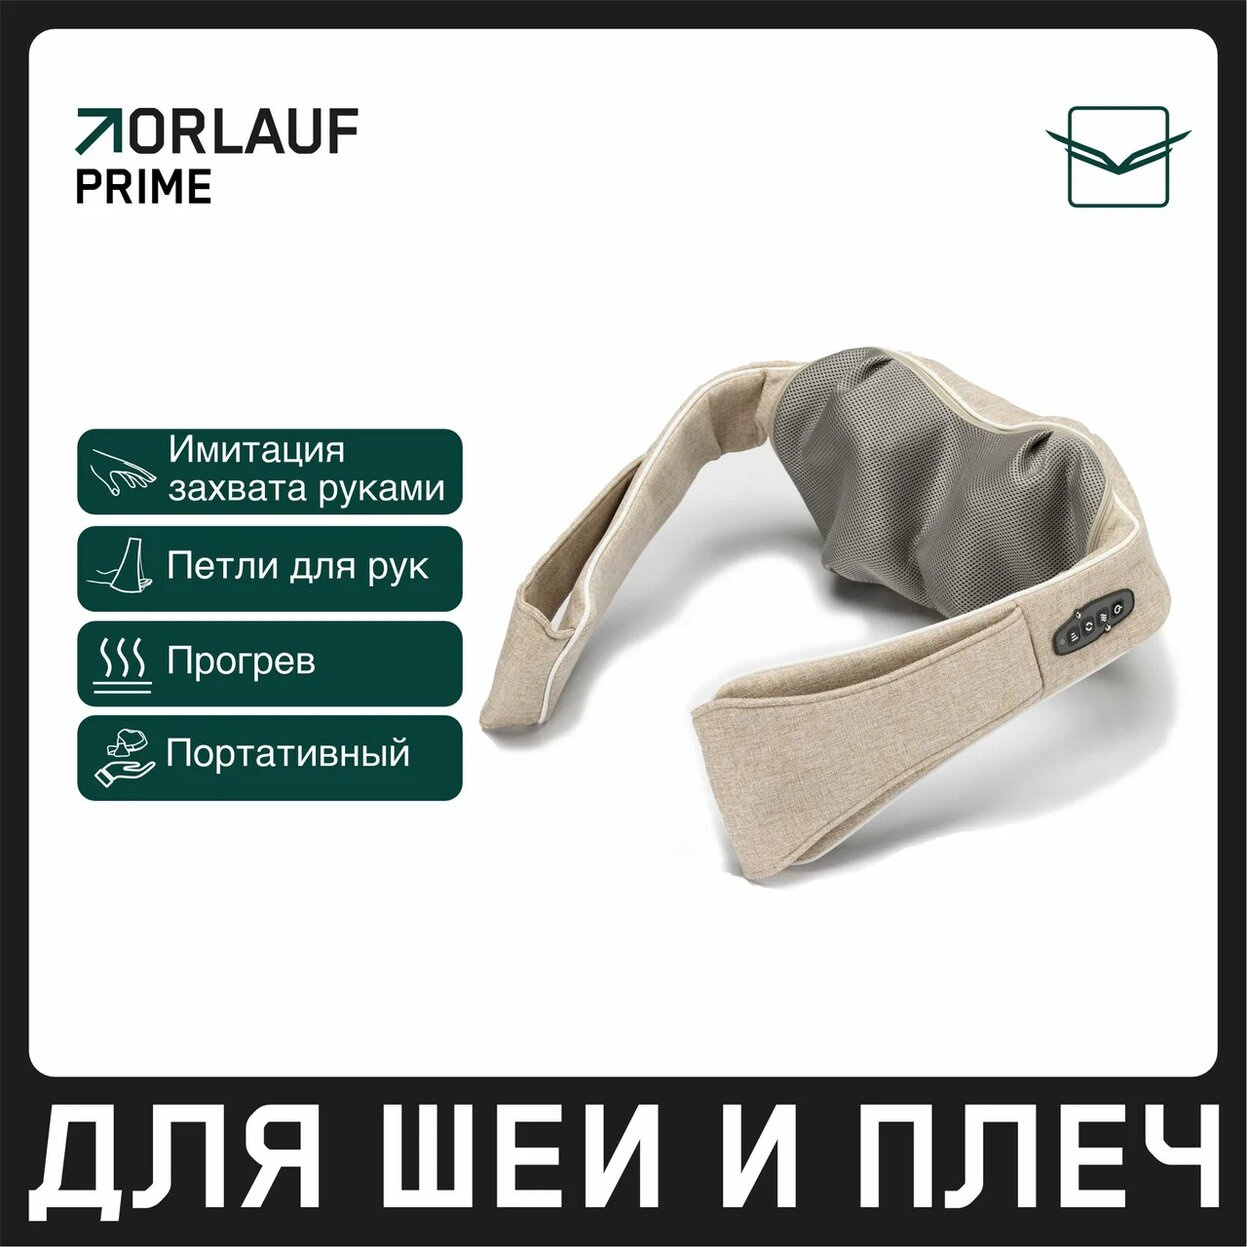 Orlauf Prime из каталога устройств для массажа в Москве по цене 11900 ₽